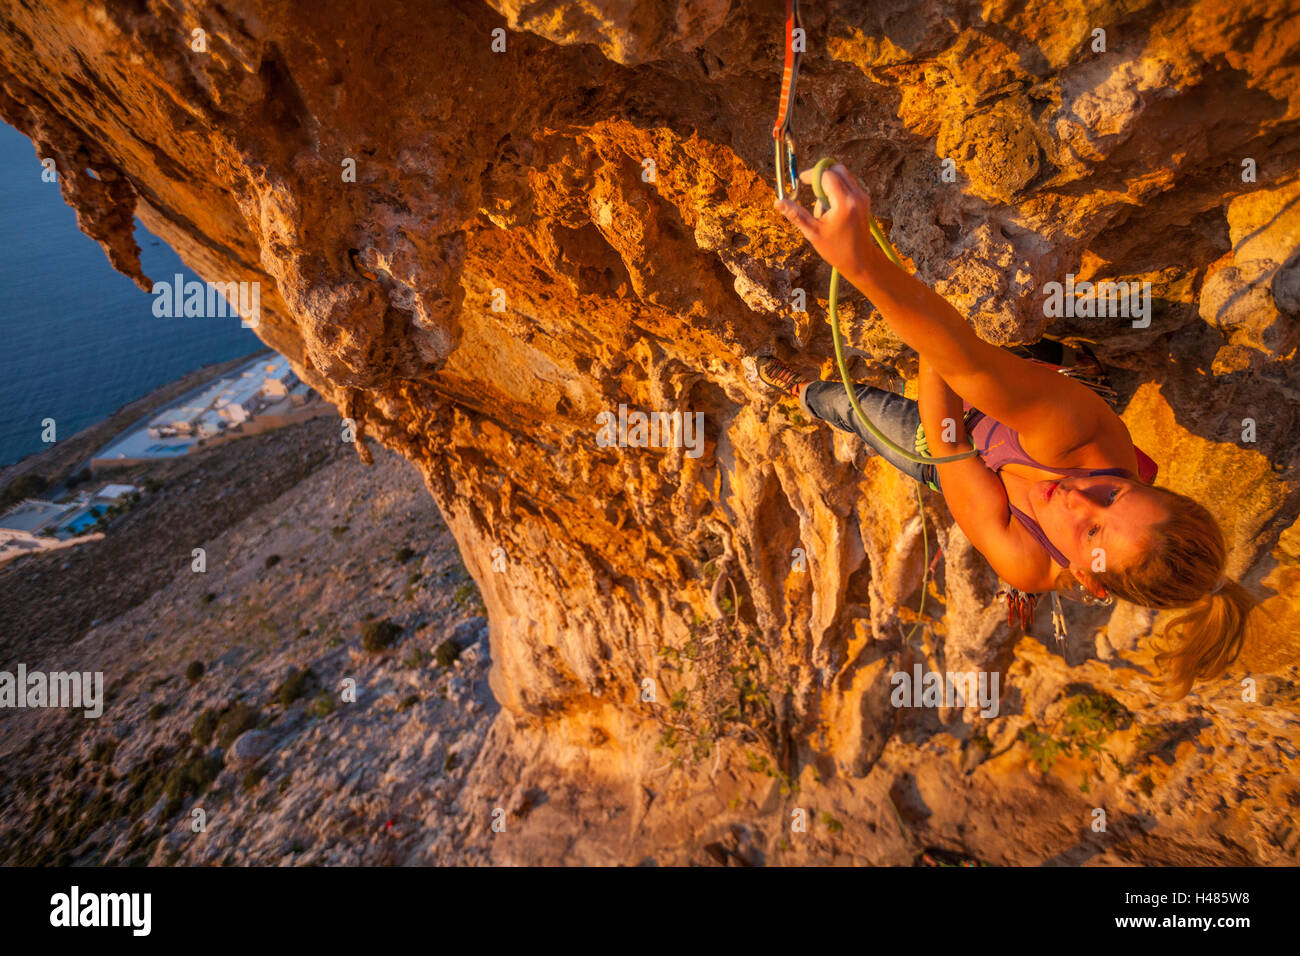 Aleksandra Ola Taistra polaca, la escalada en roca escalando el atleta 7c ruta en Grande Grotta sector en la isla de Kalymnos, Grecia Foto de stock